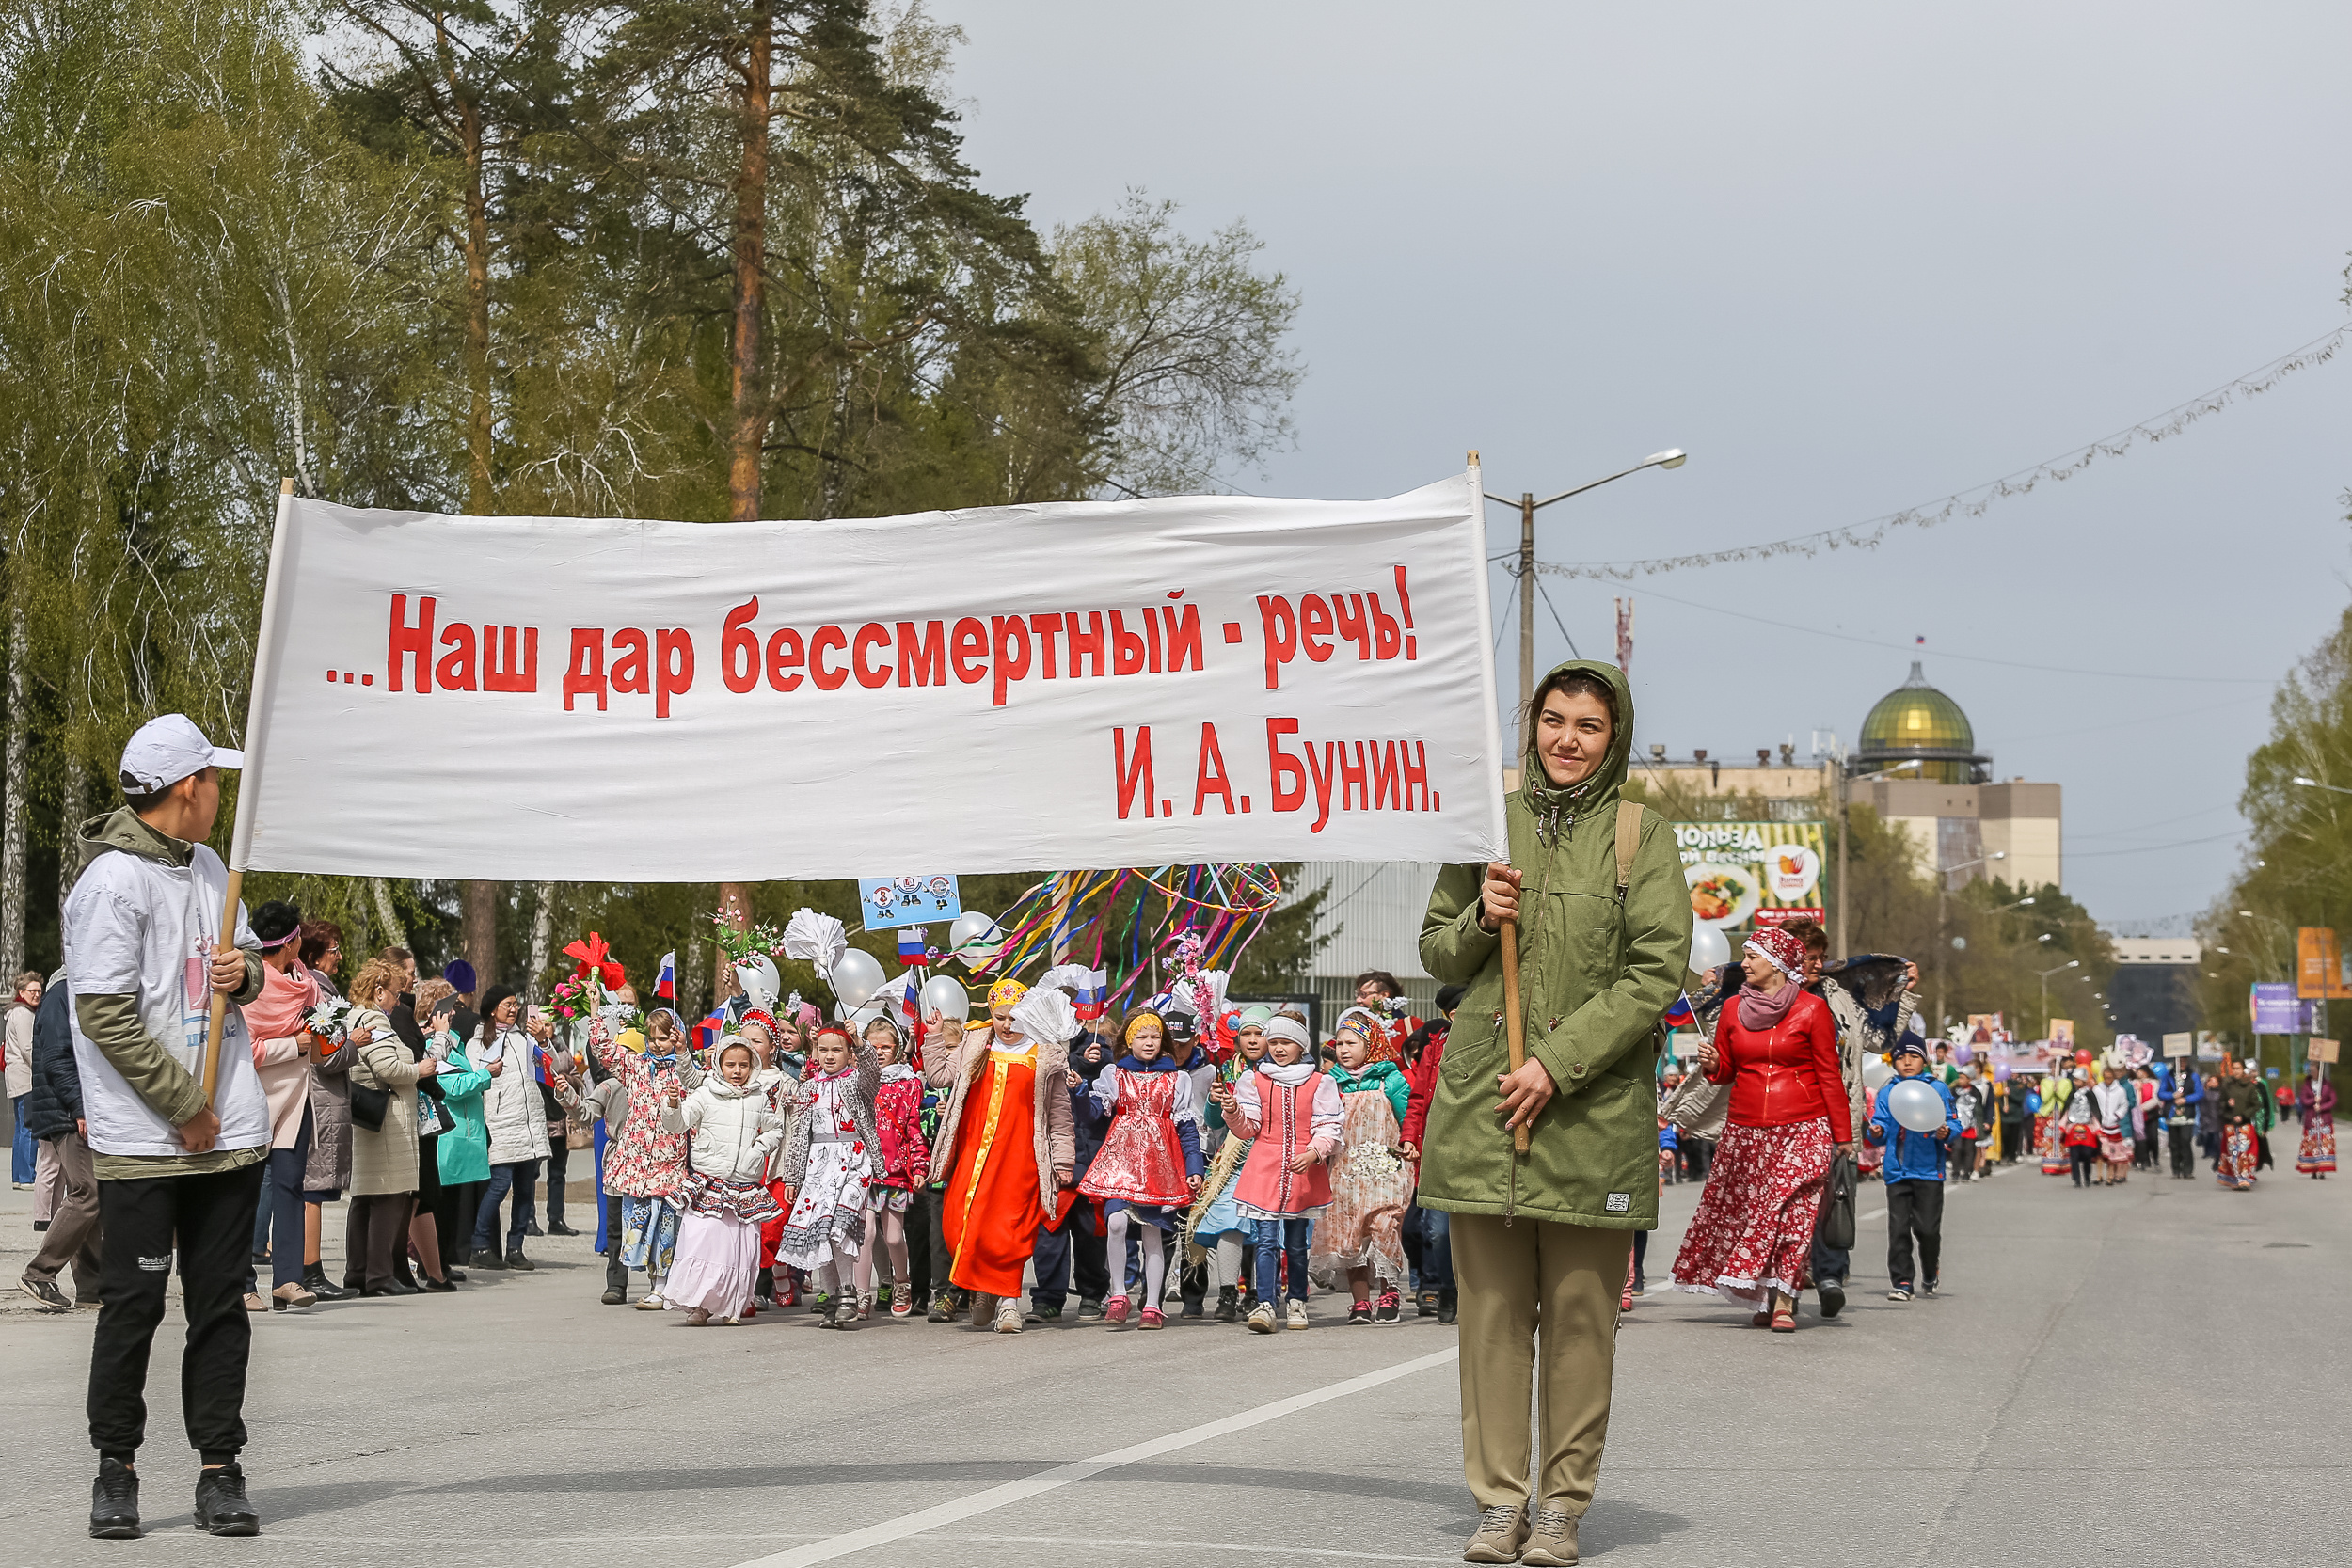 Сам праздник, согласно календарю, будет 24 мая, но жители Академгородка не смогли терпеть